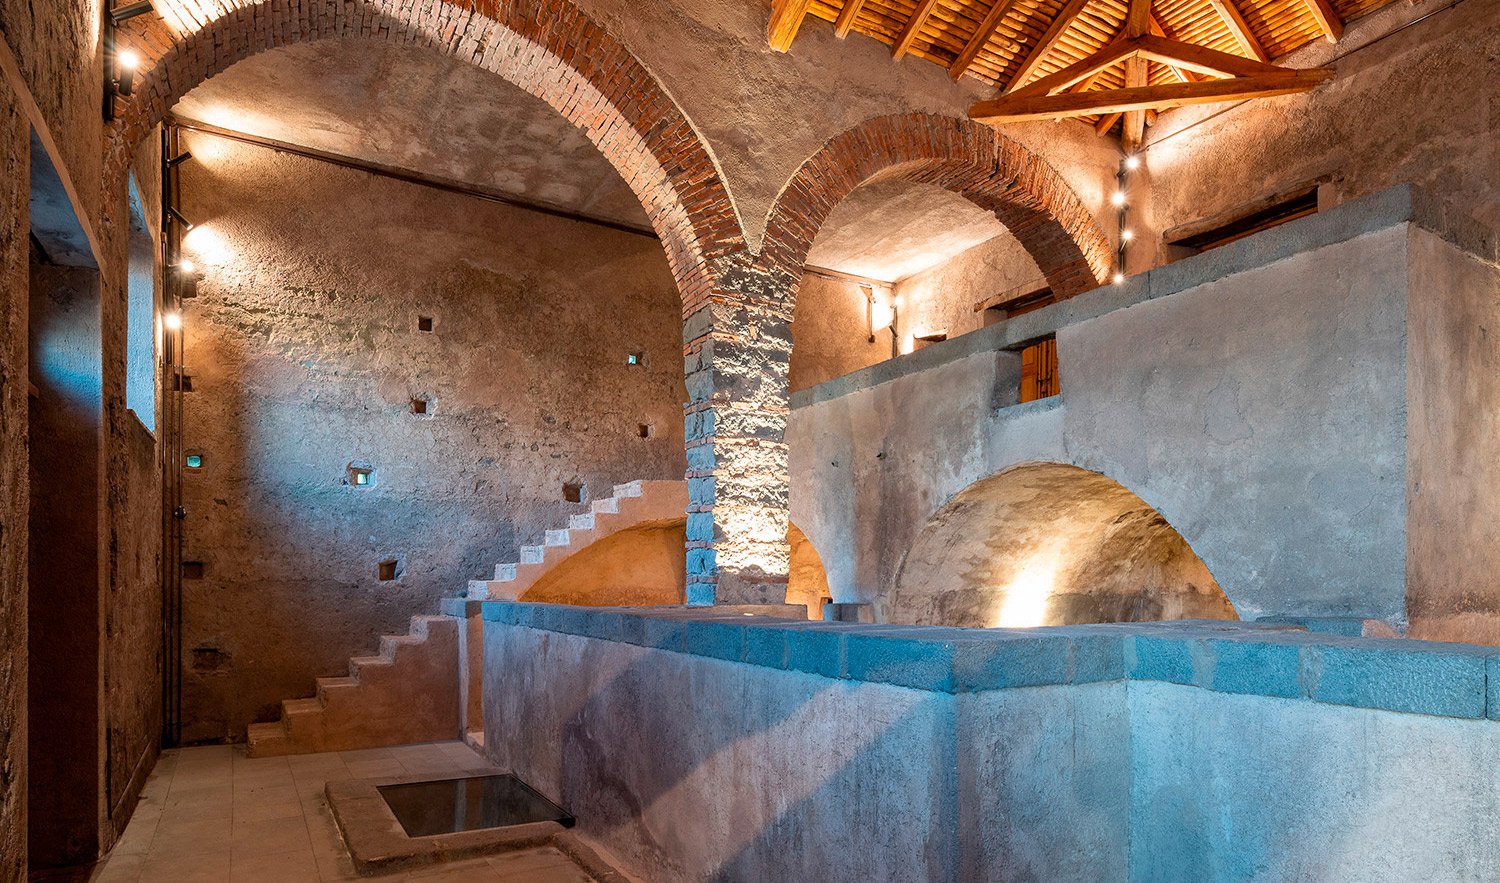 The winemaking museum | Alberto Moncada, MAB arquitectura